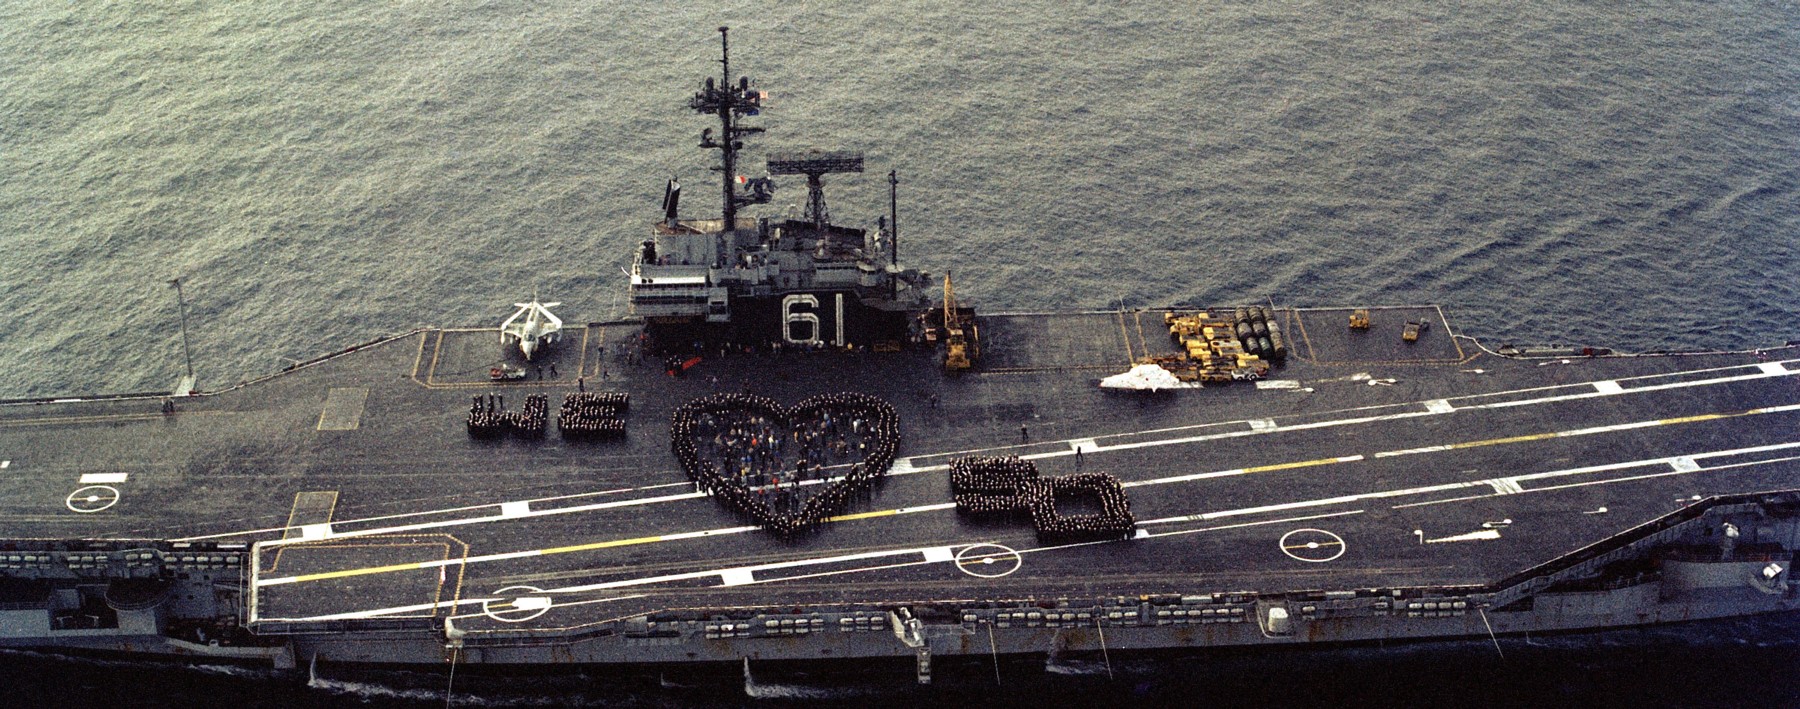 cv-61 uss ranger forrestal class aircraft carrier us navy san diego 1984 52